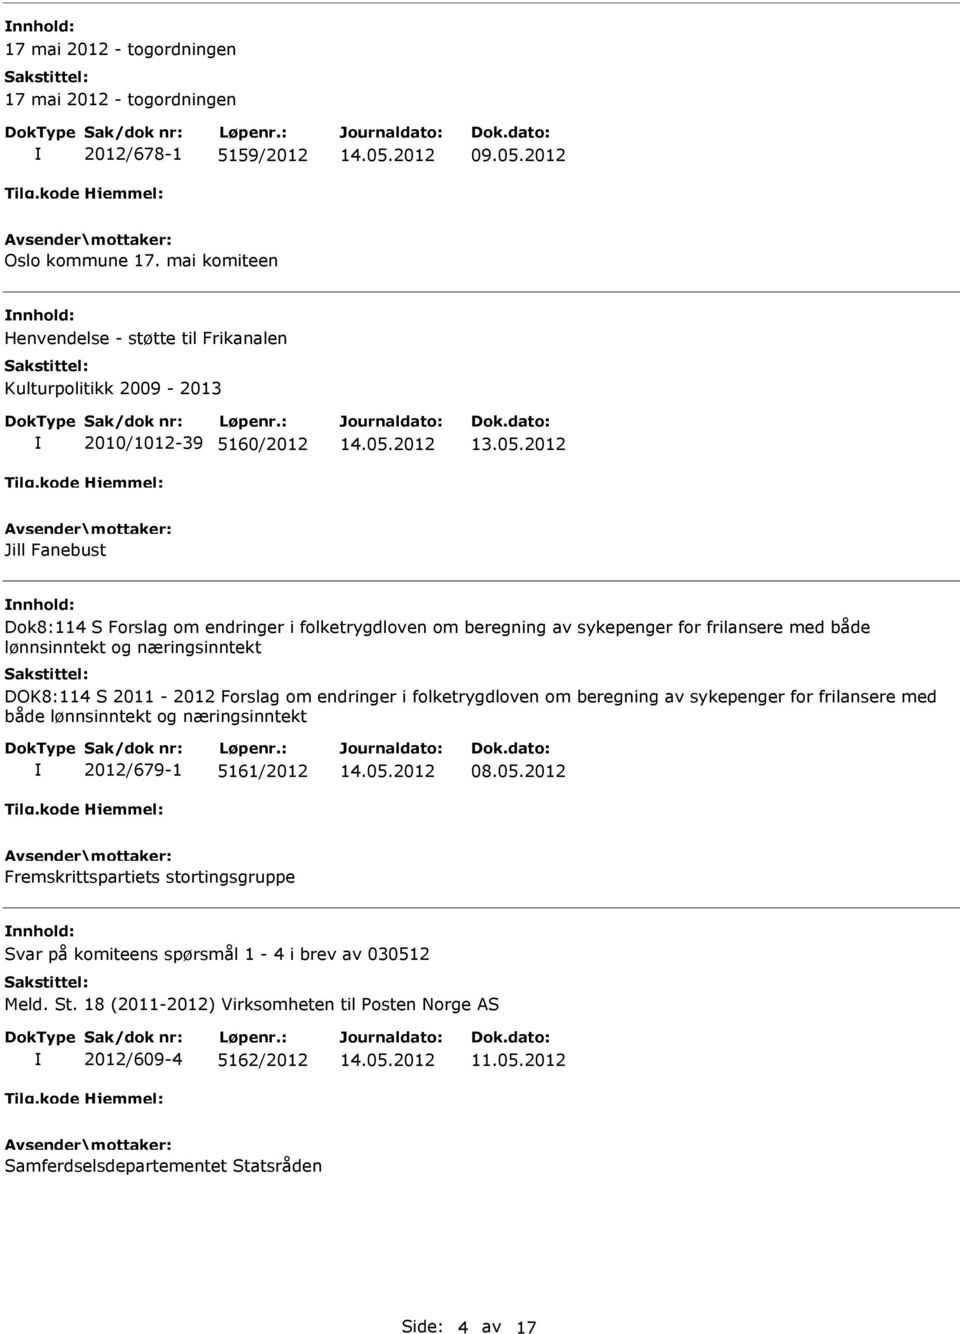 2012 Jill Fanebust Dok8:114 S Forslag om endringer i folketrygdloven om beregning av sykepenger for frilansere med både lønnsinntekt og næringsinntekt DOK8:114 S 2011-2012 Forslag om